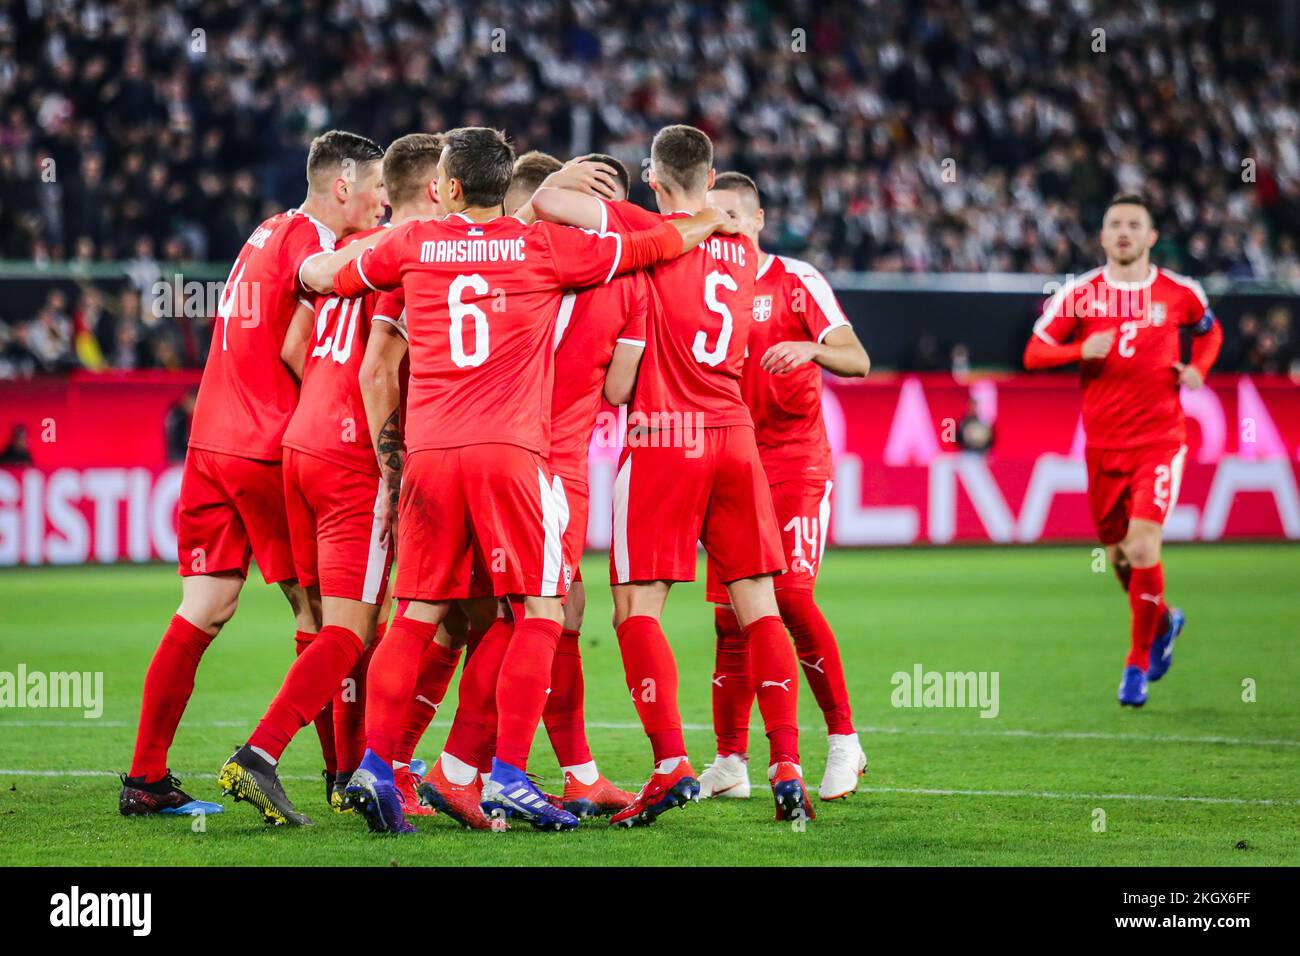 Wolfsburg, Alemania, 20 de marzo de 2019: Equipo nacional serbio celebrando un gol durante el partido internacional de fútbol Alemania vs Serbia Foto de stock